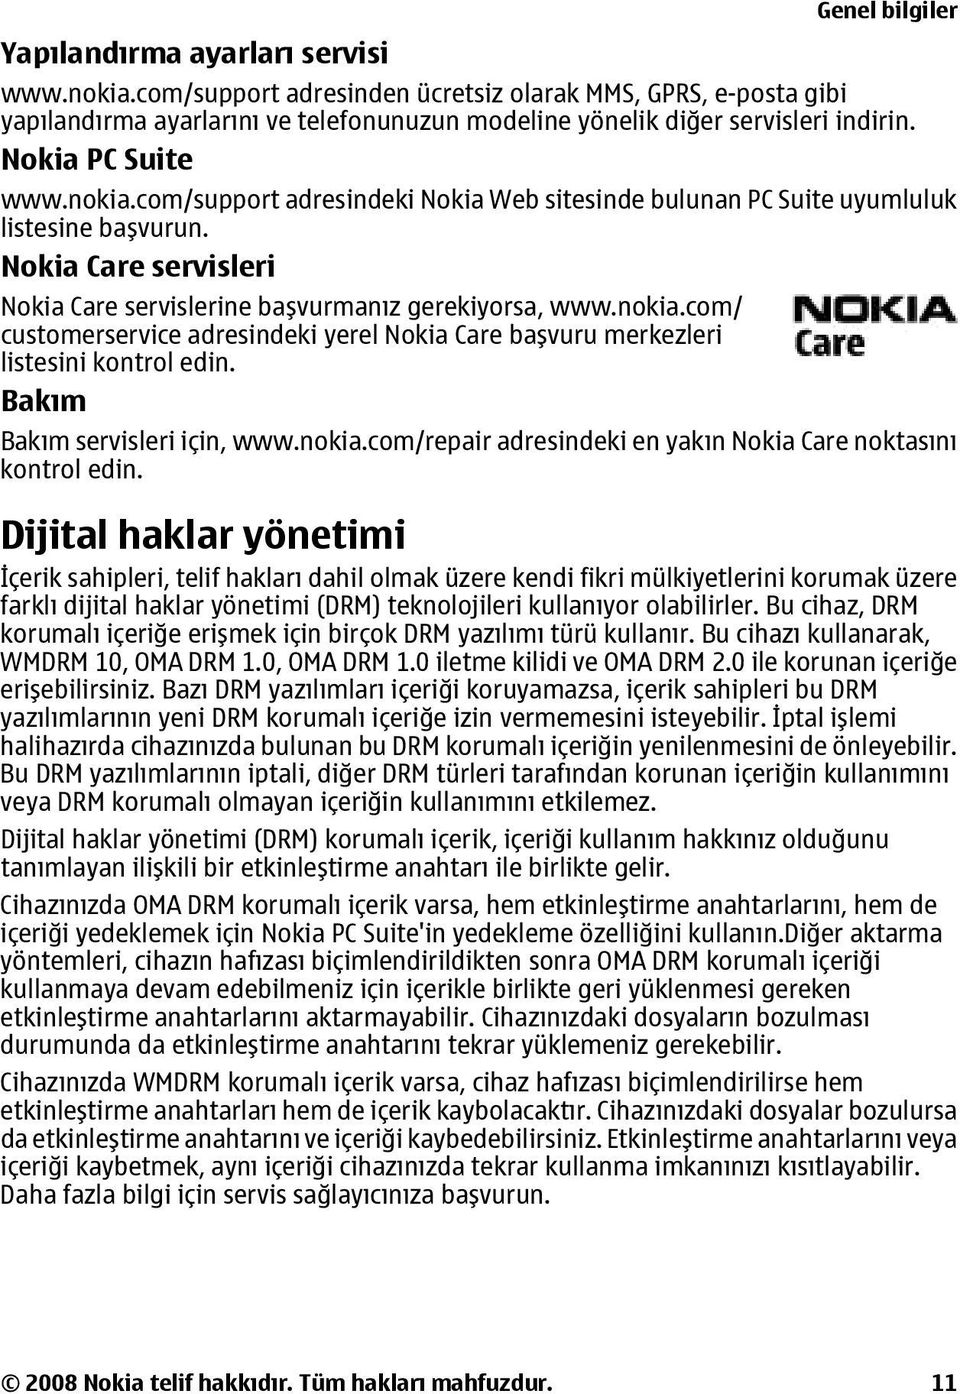 Bakım Genel bilgiler Bakım servisleri için, www.nokia.com/repair adresindeki en yakın Nokia Care noktasını kontrol edin.